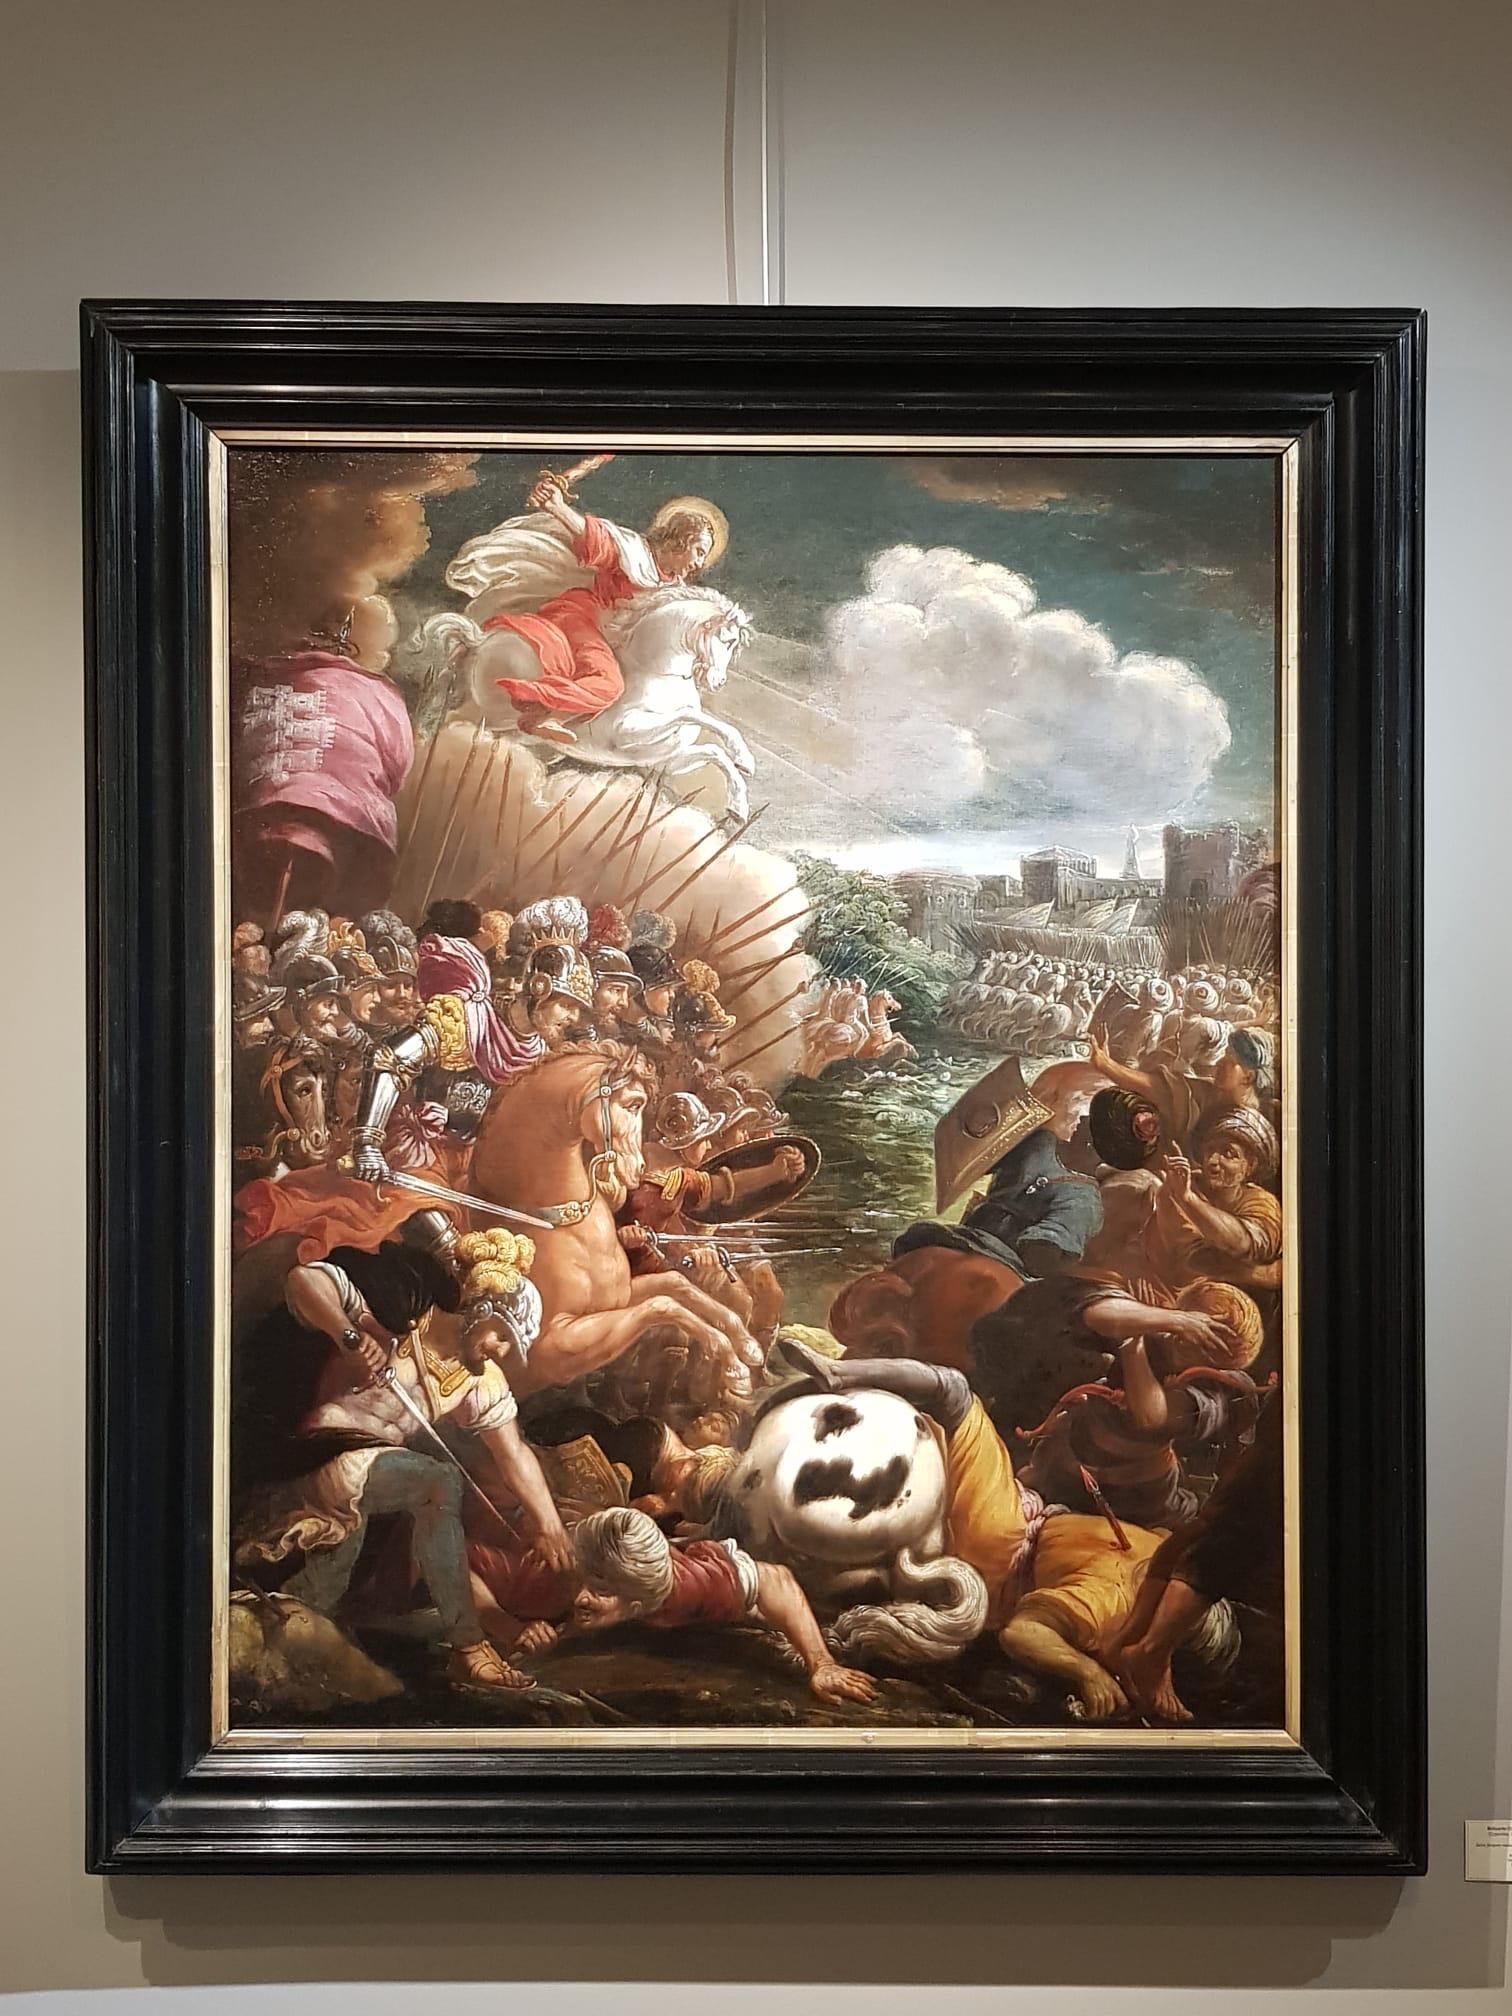 Belisario CORENZIO und seine Werkstatt
(Cyparisse, 1558 - Neapel, 1646)
Der heilige Jacques als Bulle in der Schlacht von Clavijo
H. 120 cm; L. 98 cm
Um 1600

Dieses feurige und farbenfrohe manieristische Gemälde ist das Werk eines Künstlers der